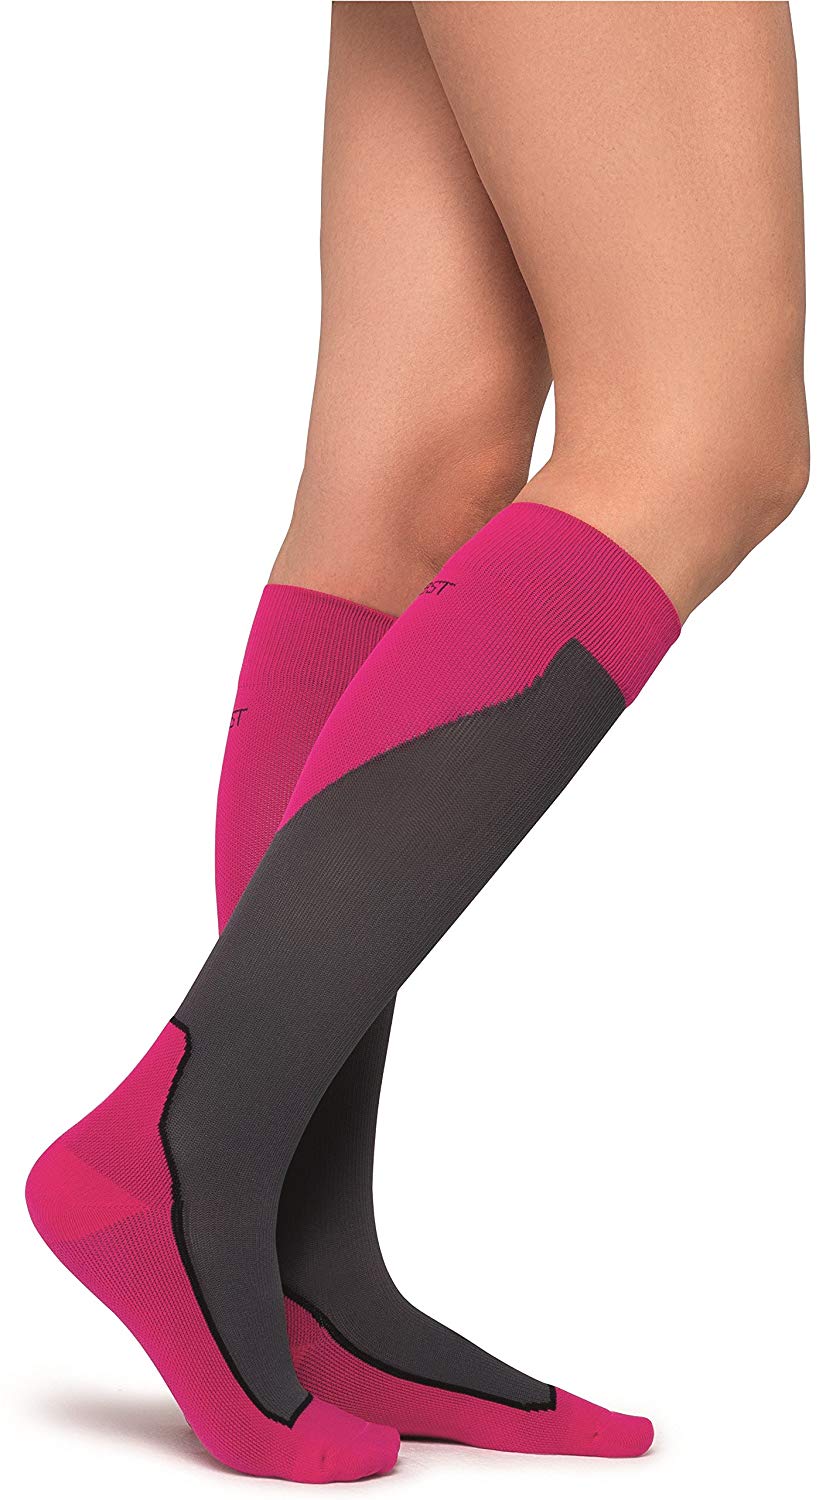 Jobst Unisex Sport Sock Knee High Closed Toe 20 30 Mmhg Ebay